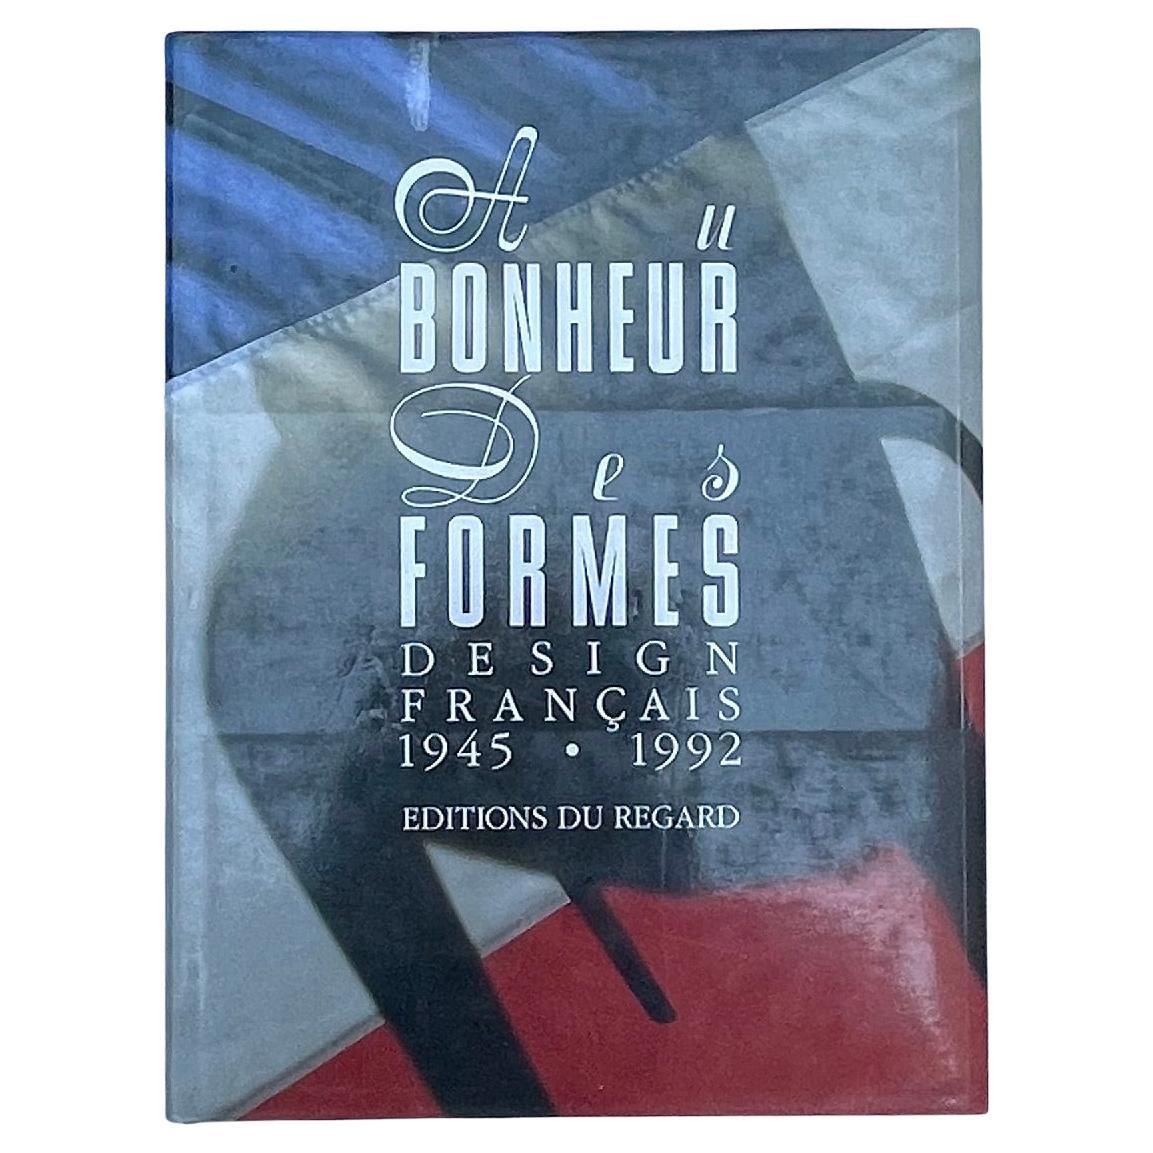 Au Bonheur des Formes, Design Francais 1945-1992 by Francois Mathey